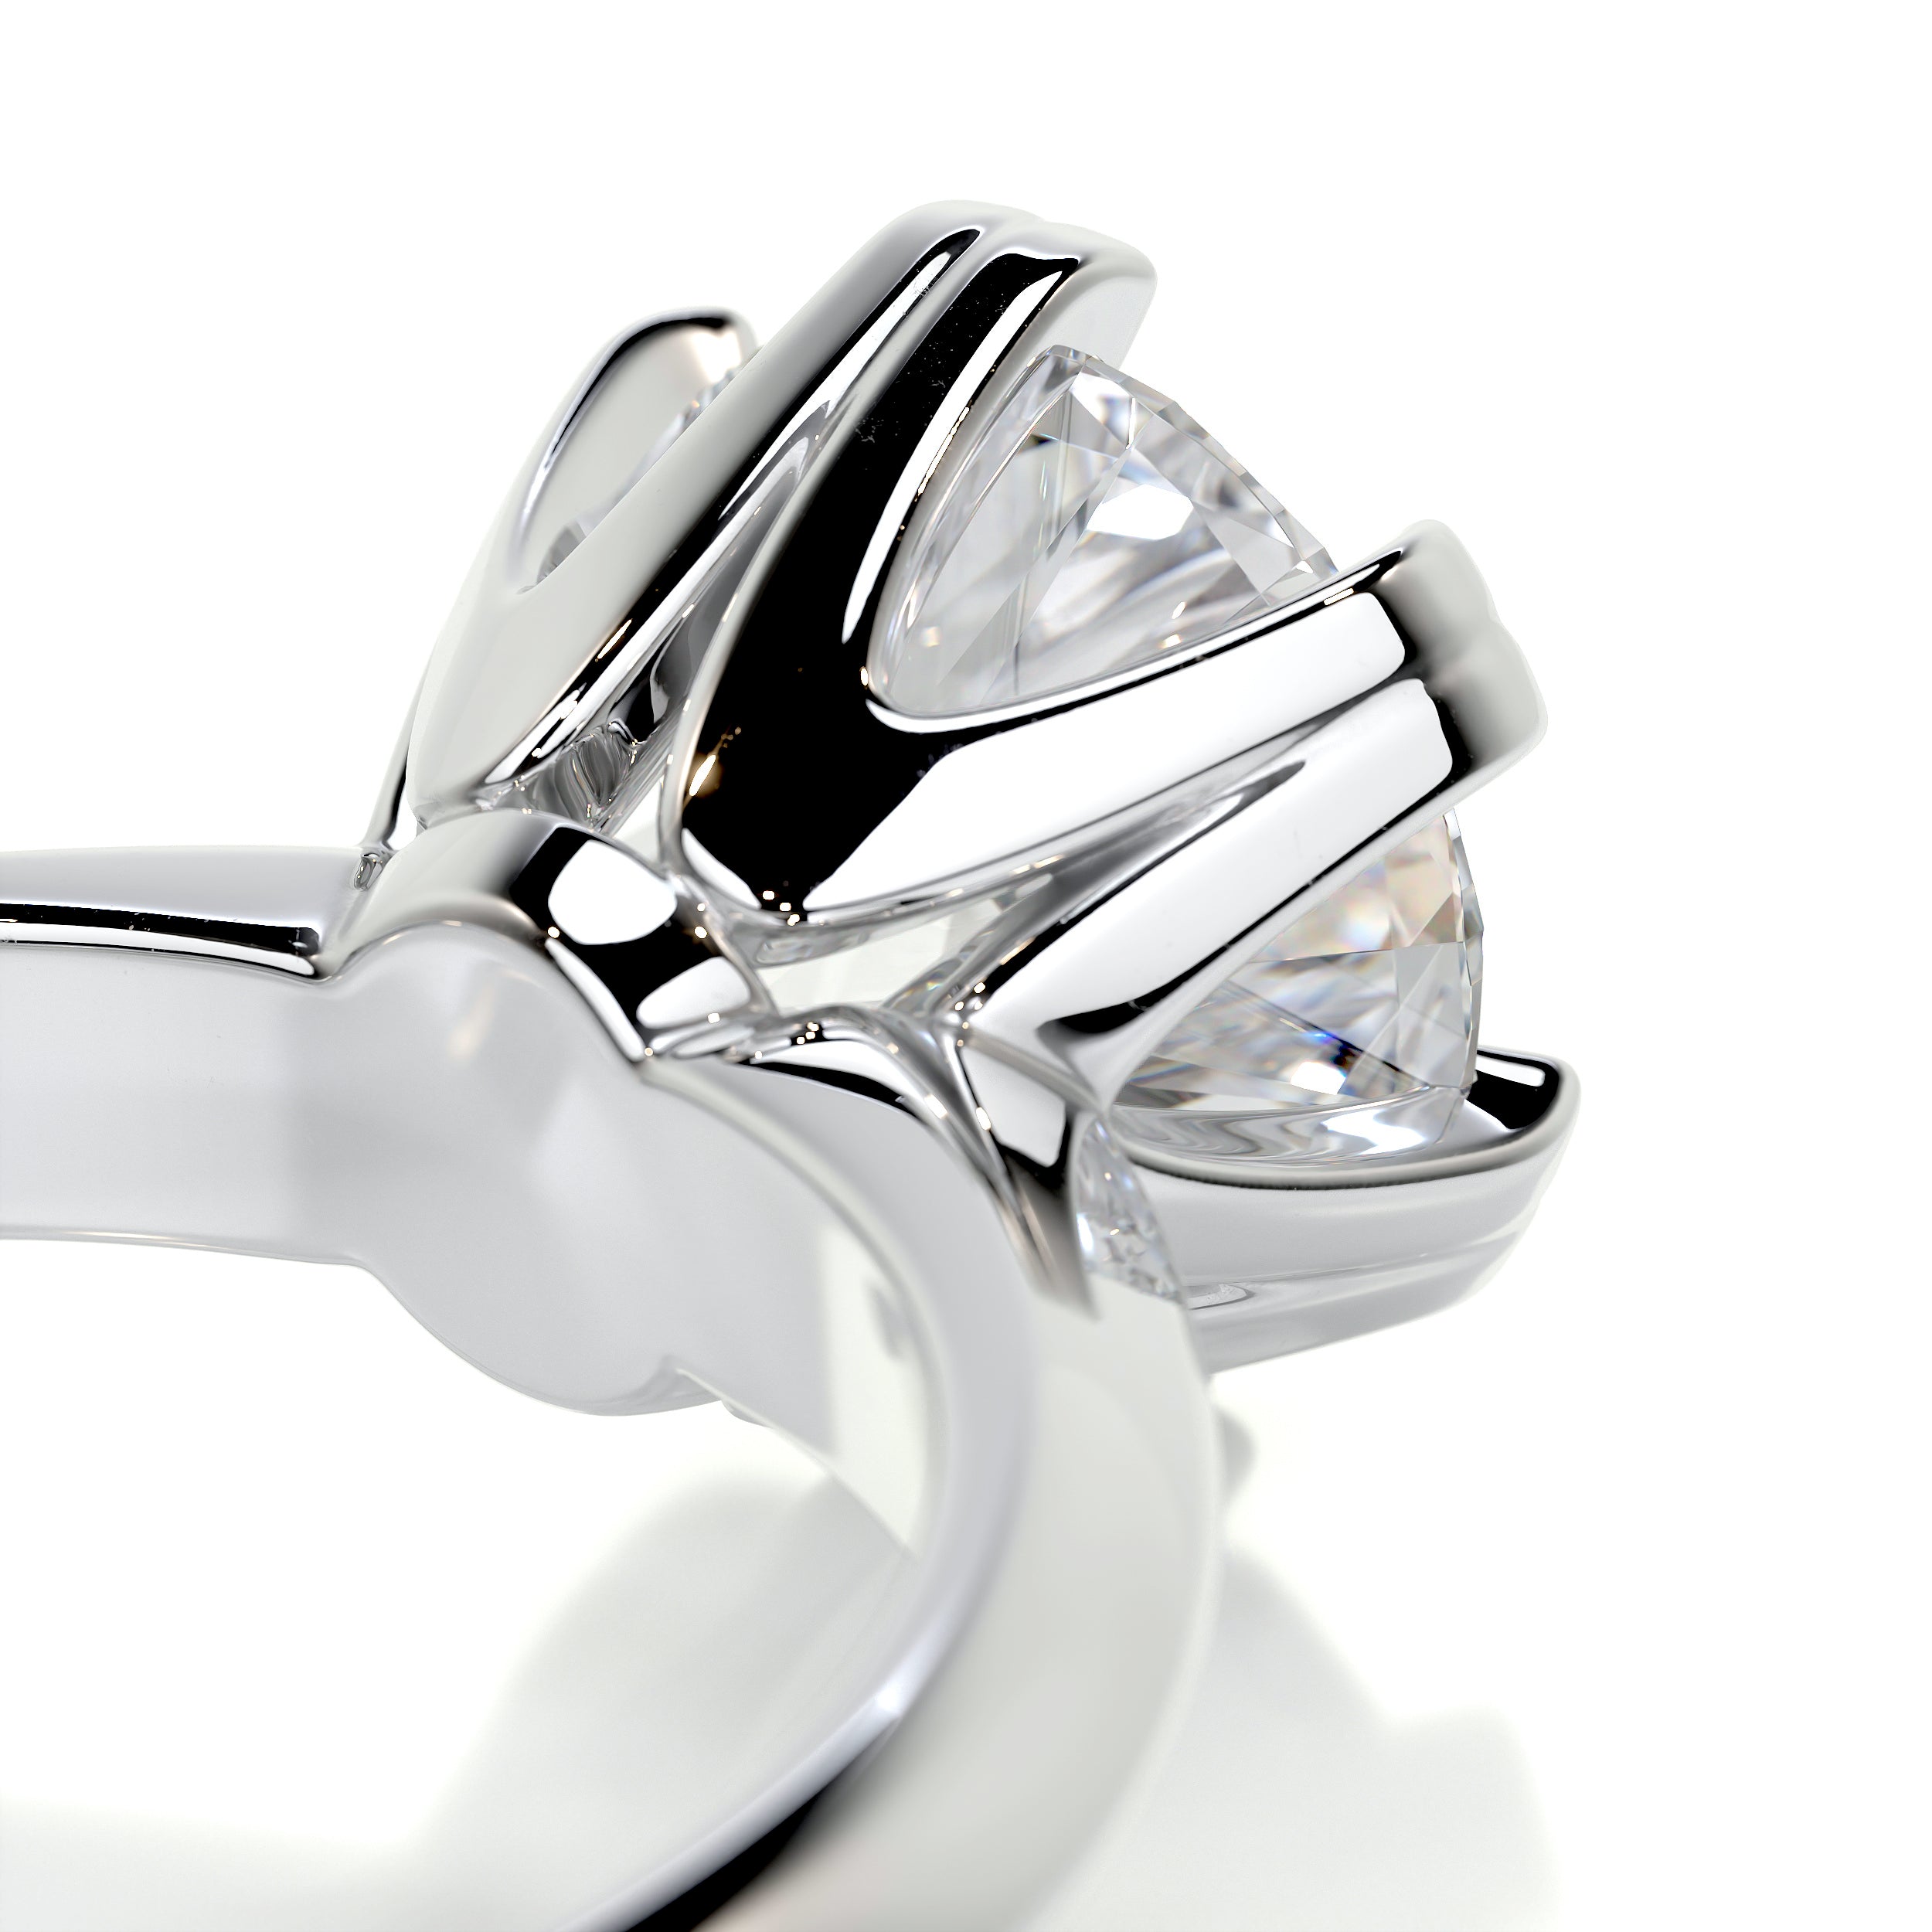 Alexis Diamond Engagement Ring   (1.5 Carat) -Platinum